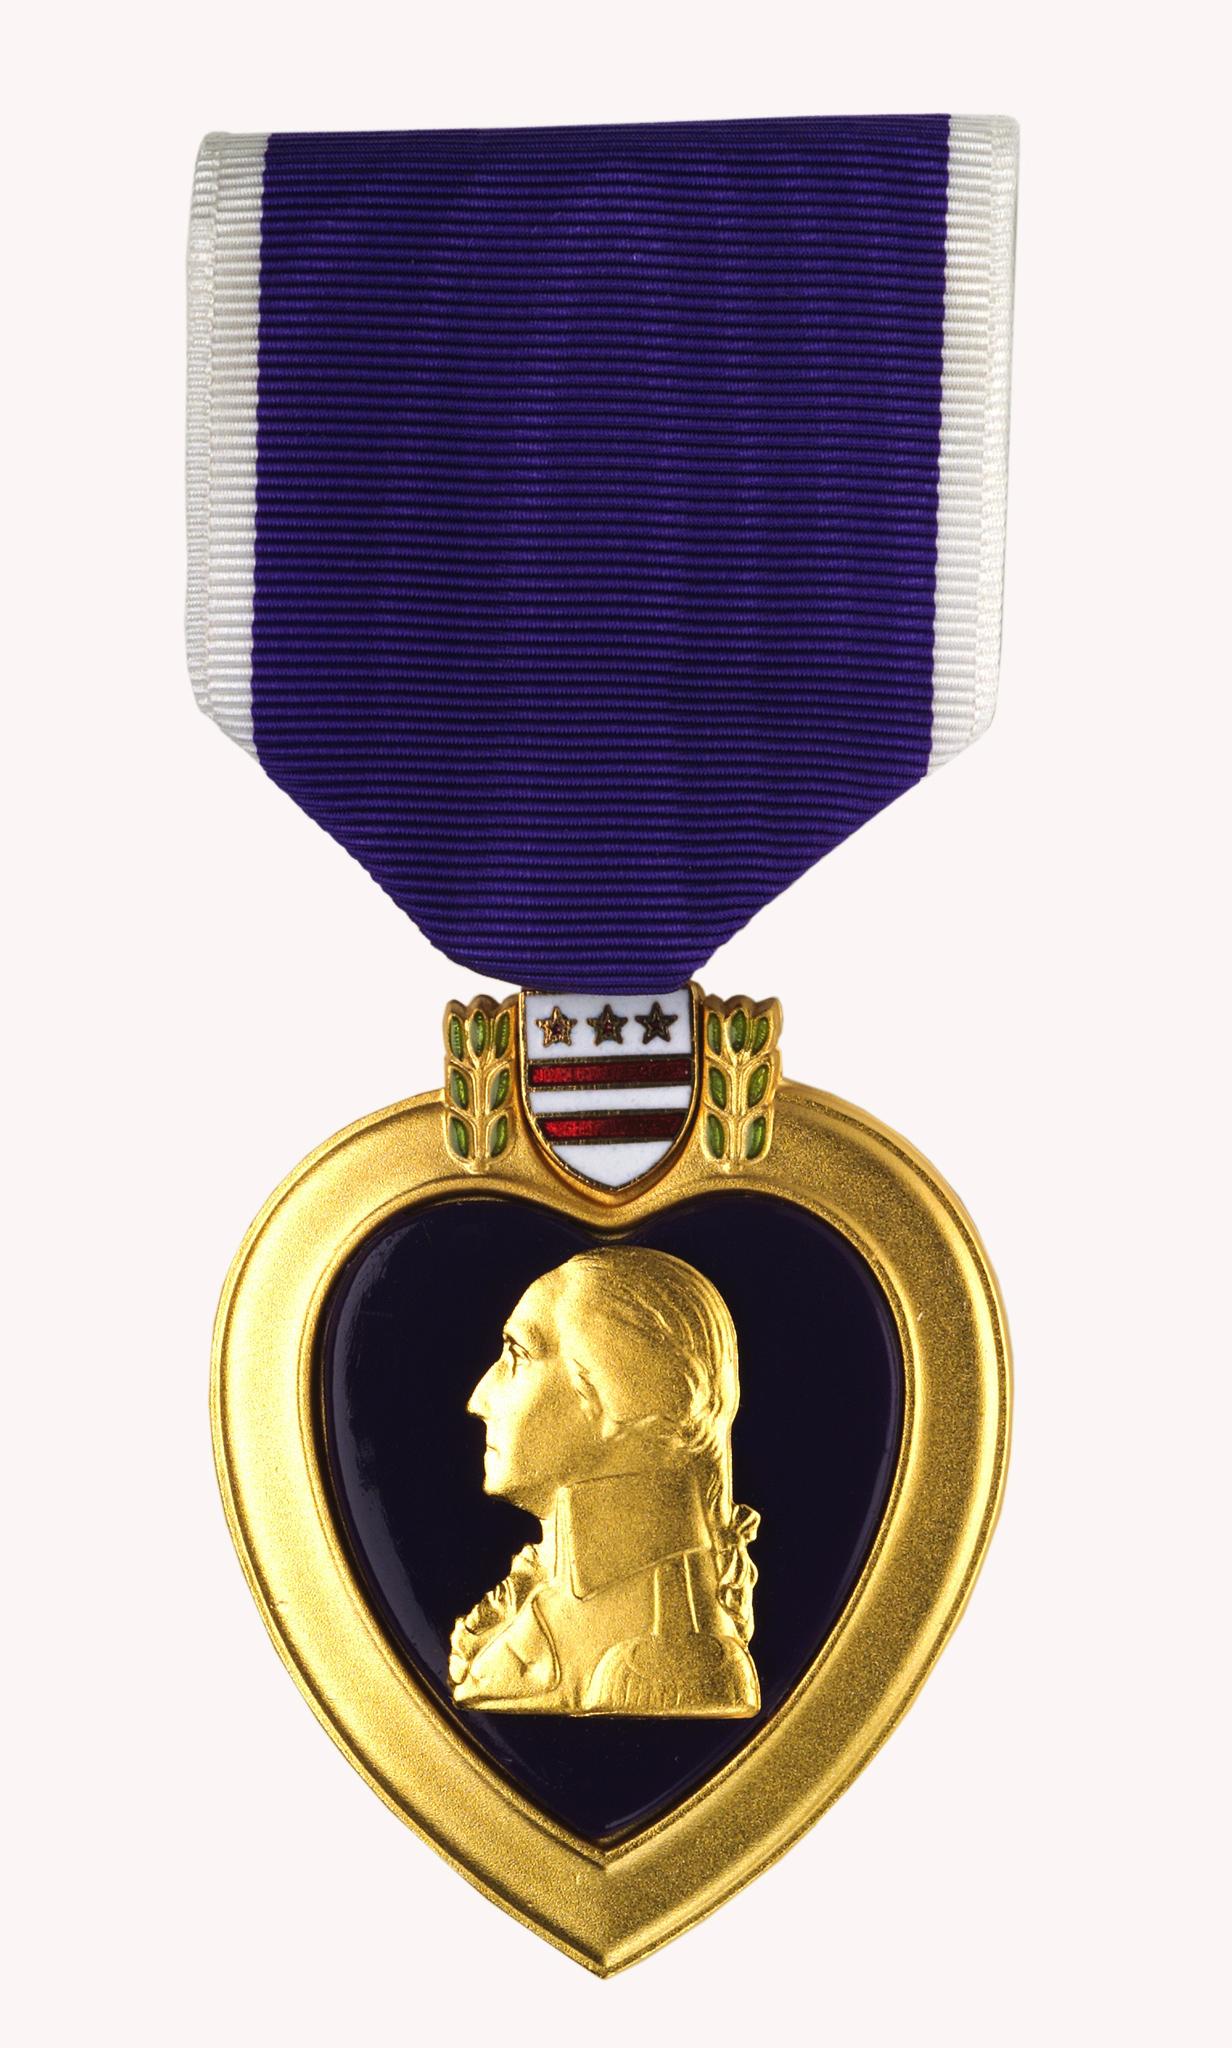 Purple Heart Award Clip Art